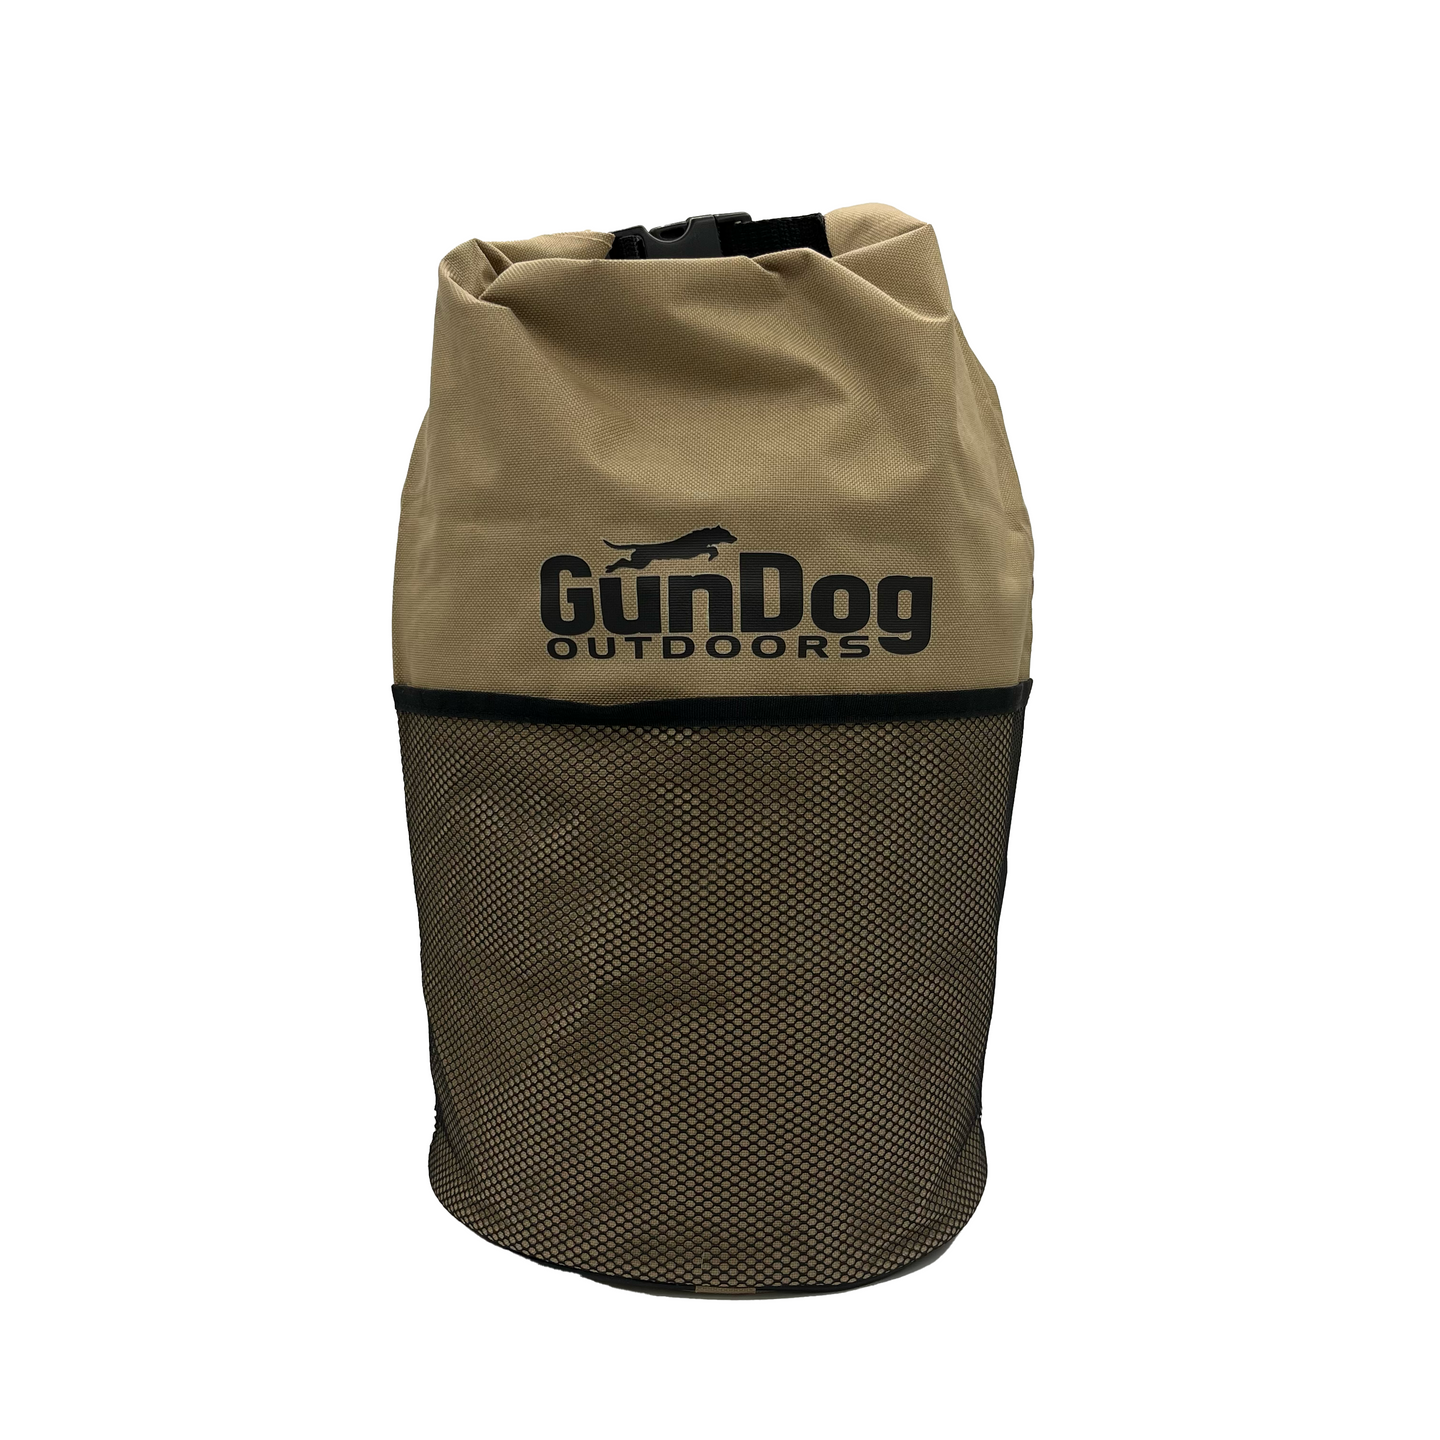 Are Dog Food Bags Waterproof?